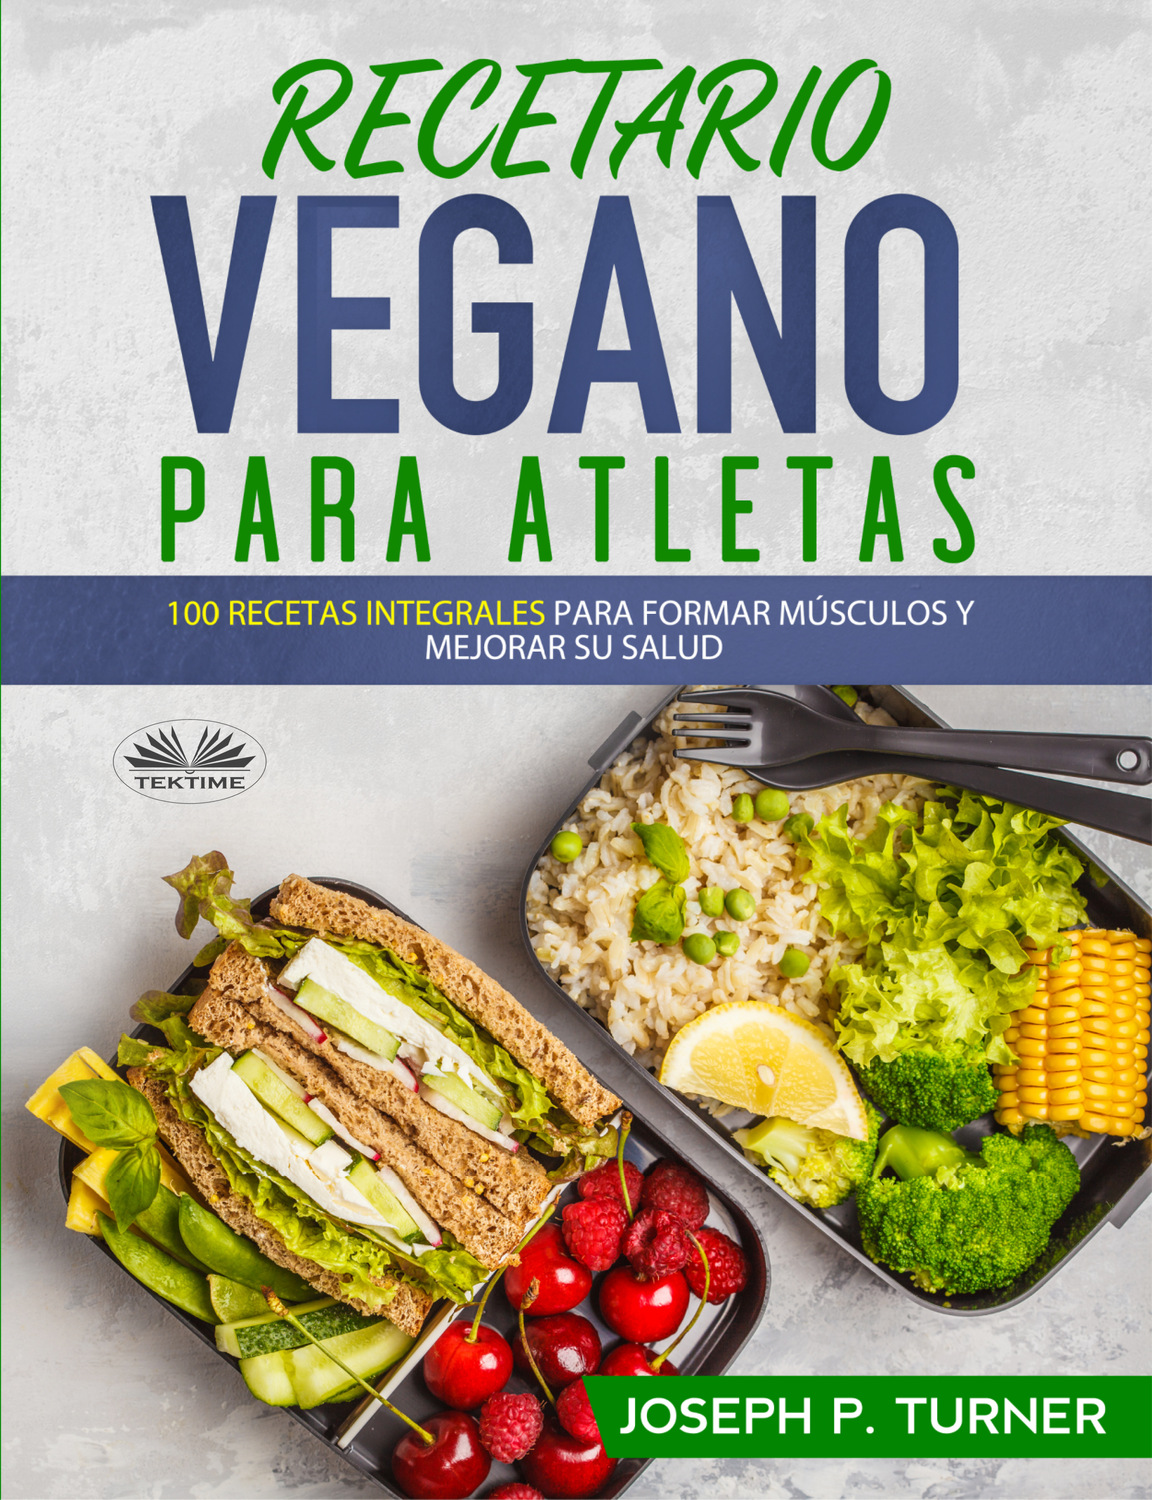 Recetario Vegano Para Atletas, Joseph P. Turner – скачать книгу fb2, epub,  pdf на Литрес